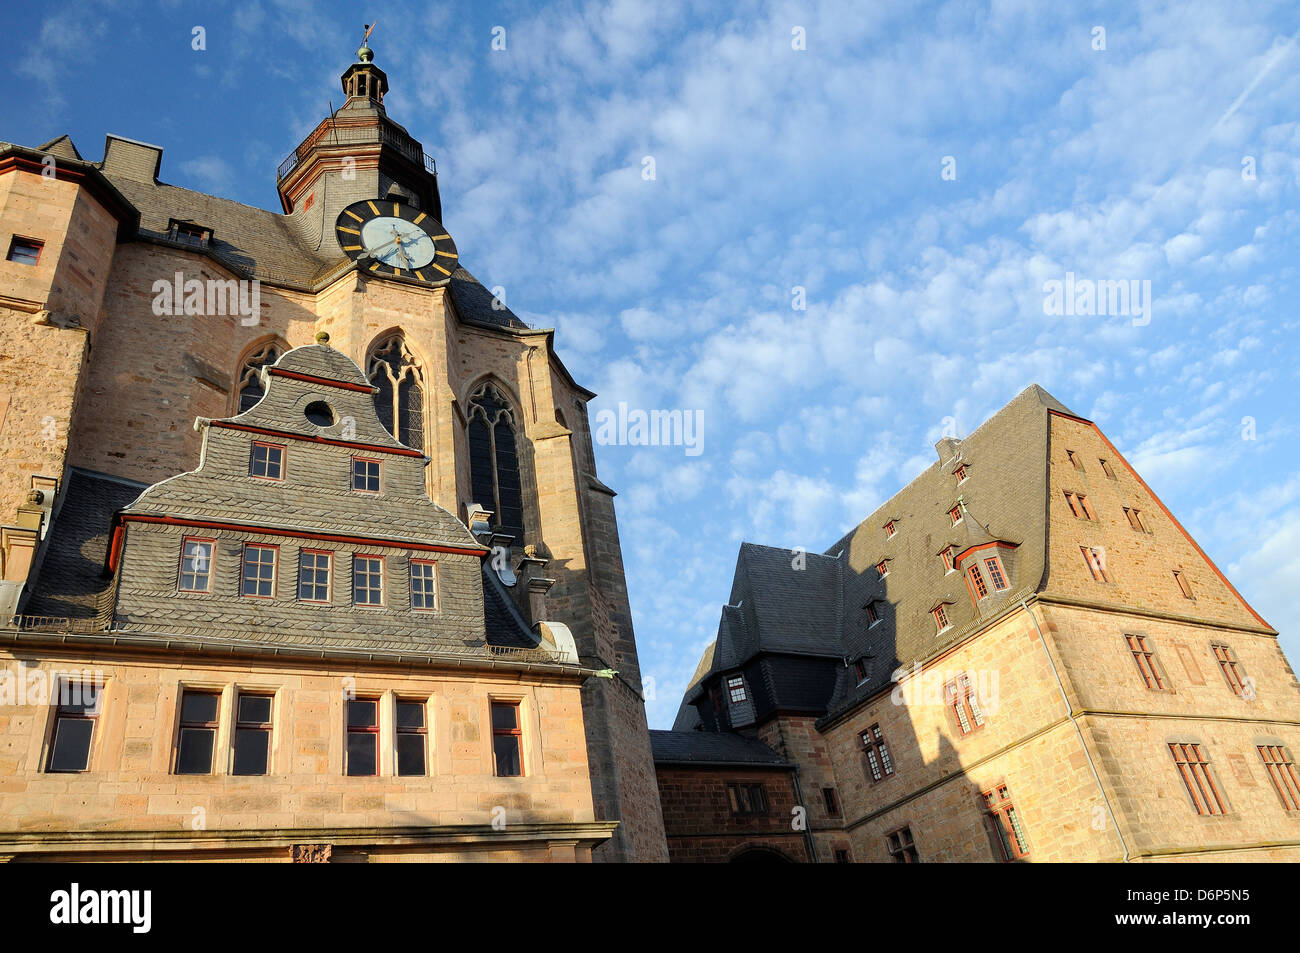 Landgrafen Schlosses Uhrturm, University Museum der Kulturgeschichte, Marburg, Hessen, Deutschland, Europa Stockfoto